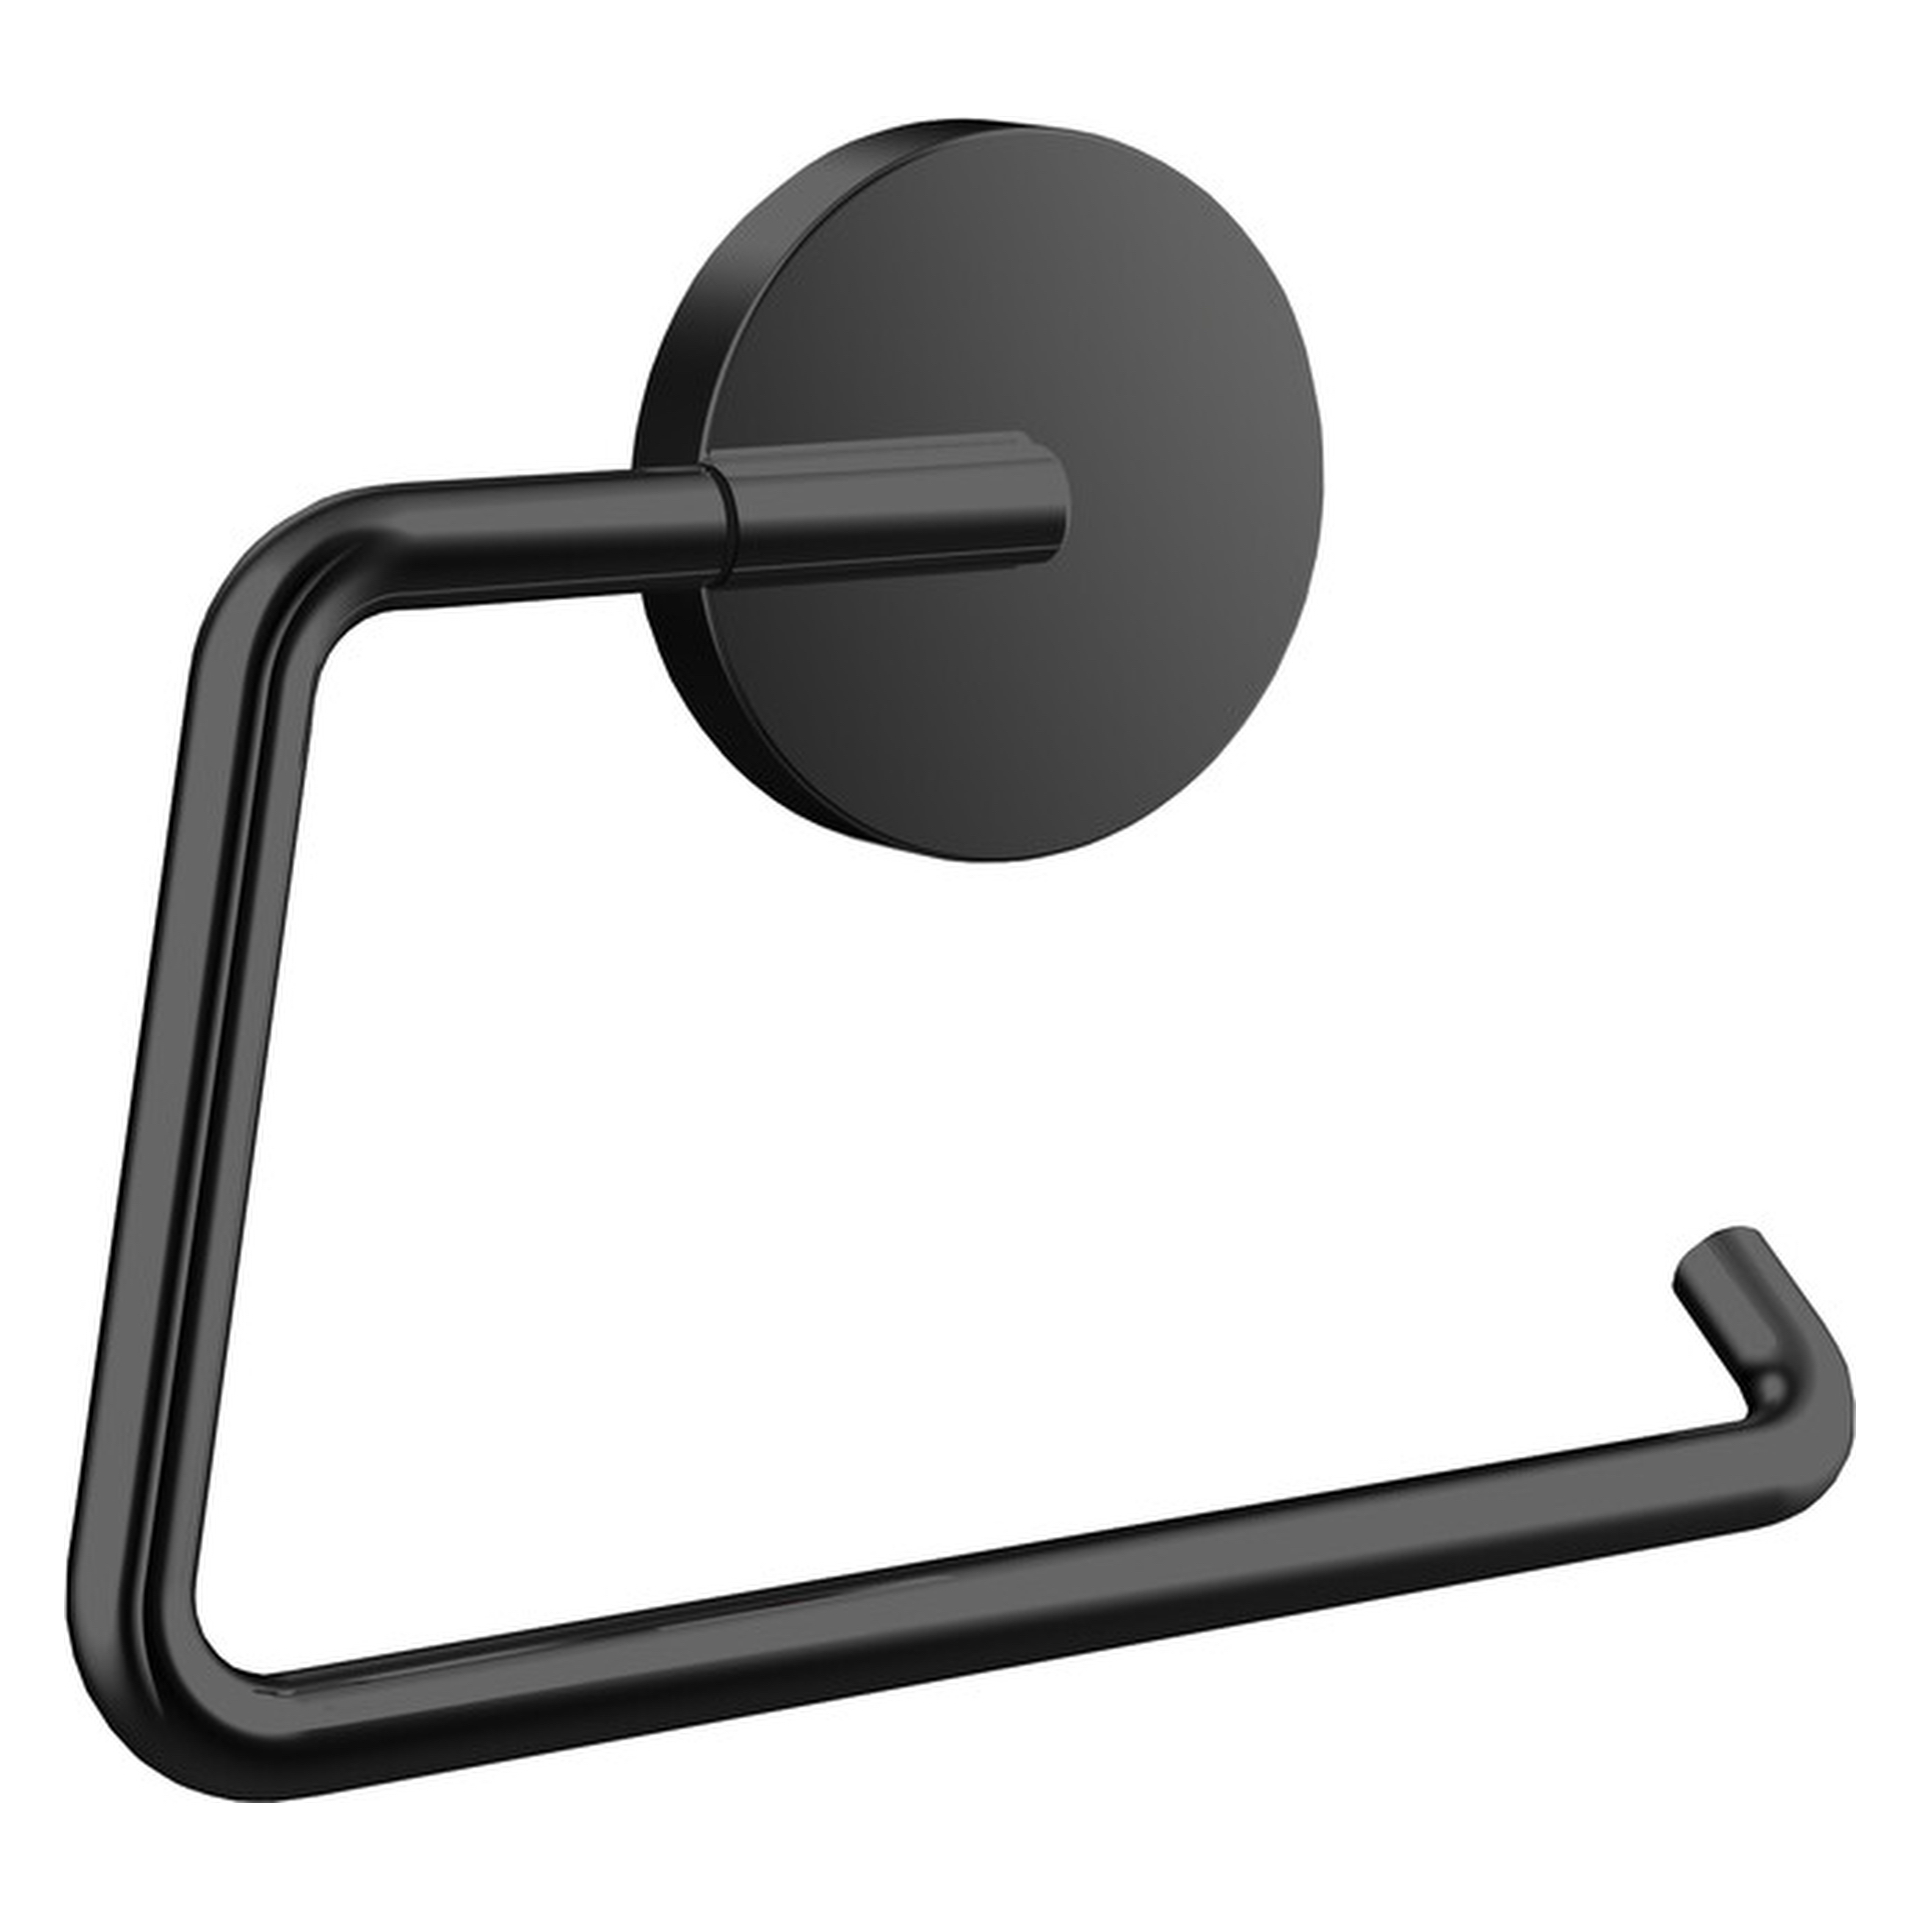 emco Toilettenpapierhalter ohne Deckel „round“ 2,3 × 10,3 cm in schwarz, Befestigung verdeckt